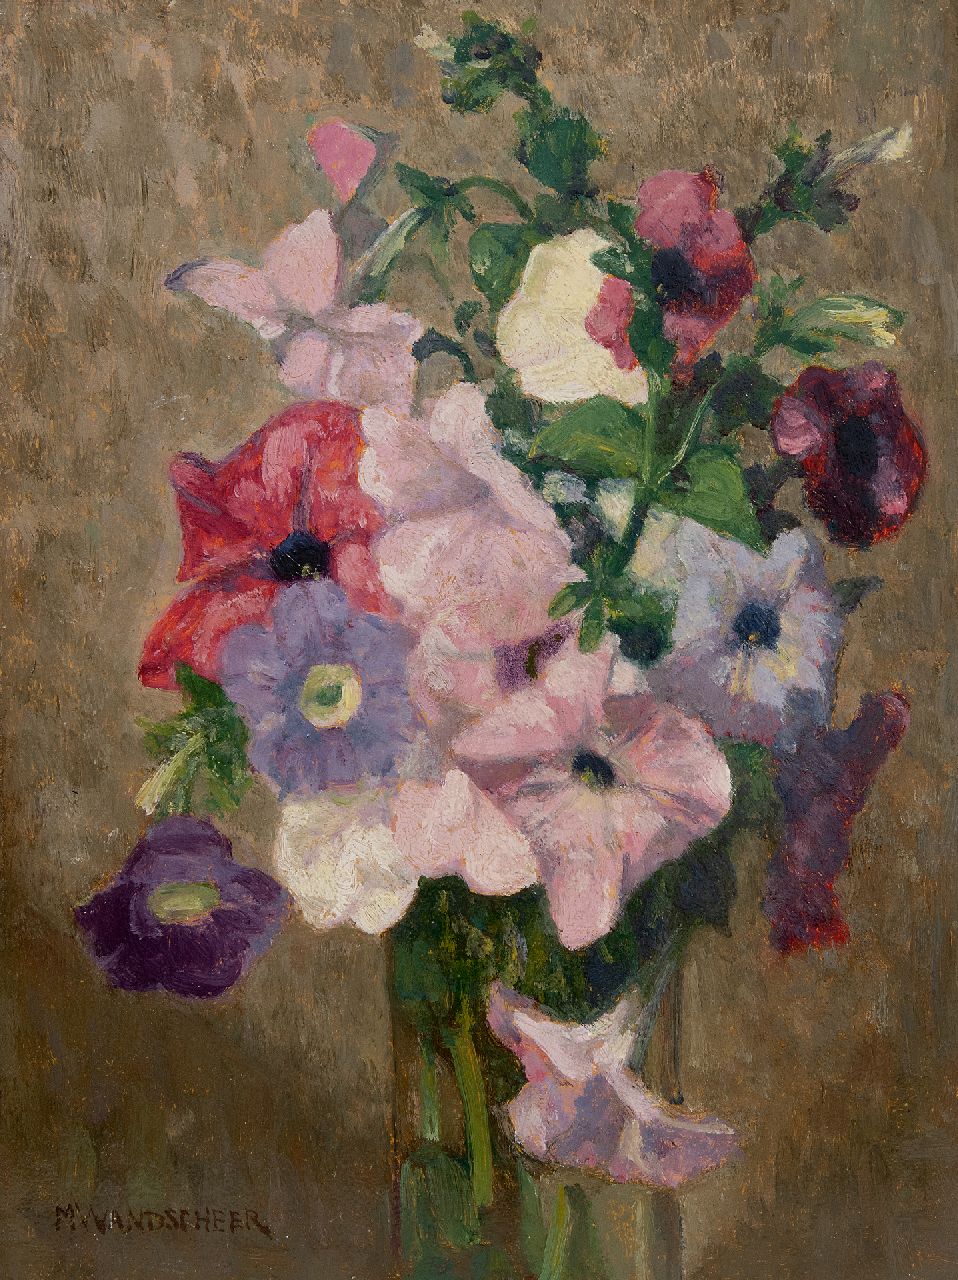 Wandscheer M.W.  | Maria Wilhelmina 'Marie' Wandscheer | Schilderijen te koop aangeboden | Bloemstilleven met petunia's, olieverf op paneel 32,2 x 23,6 cm, gesigneerd linksonder